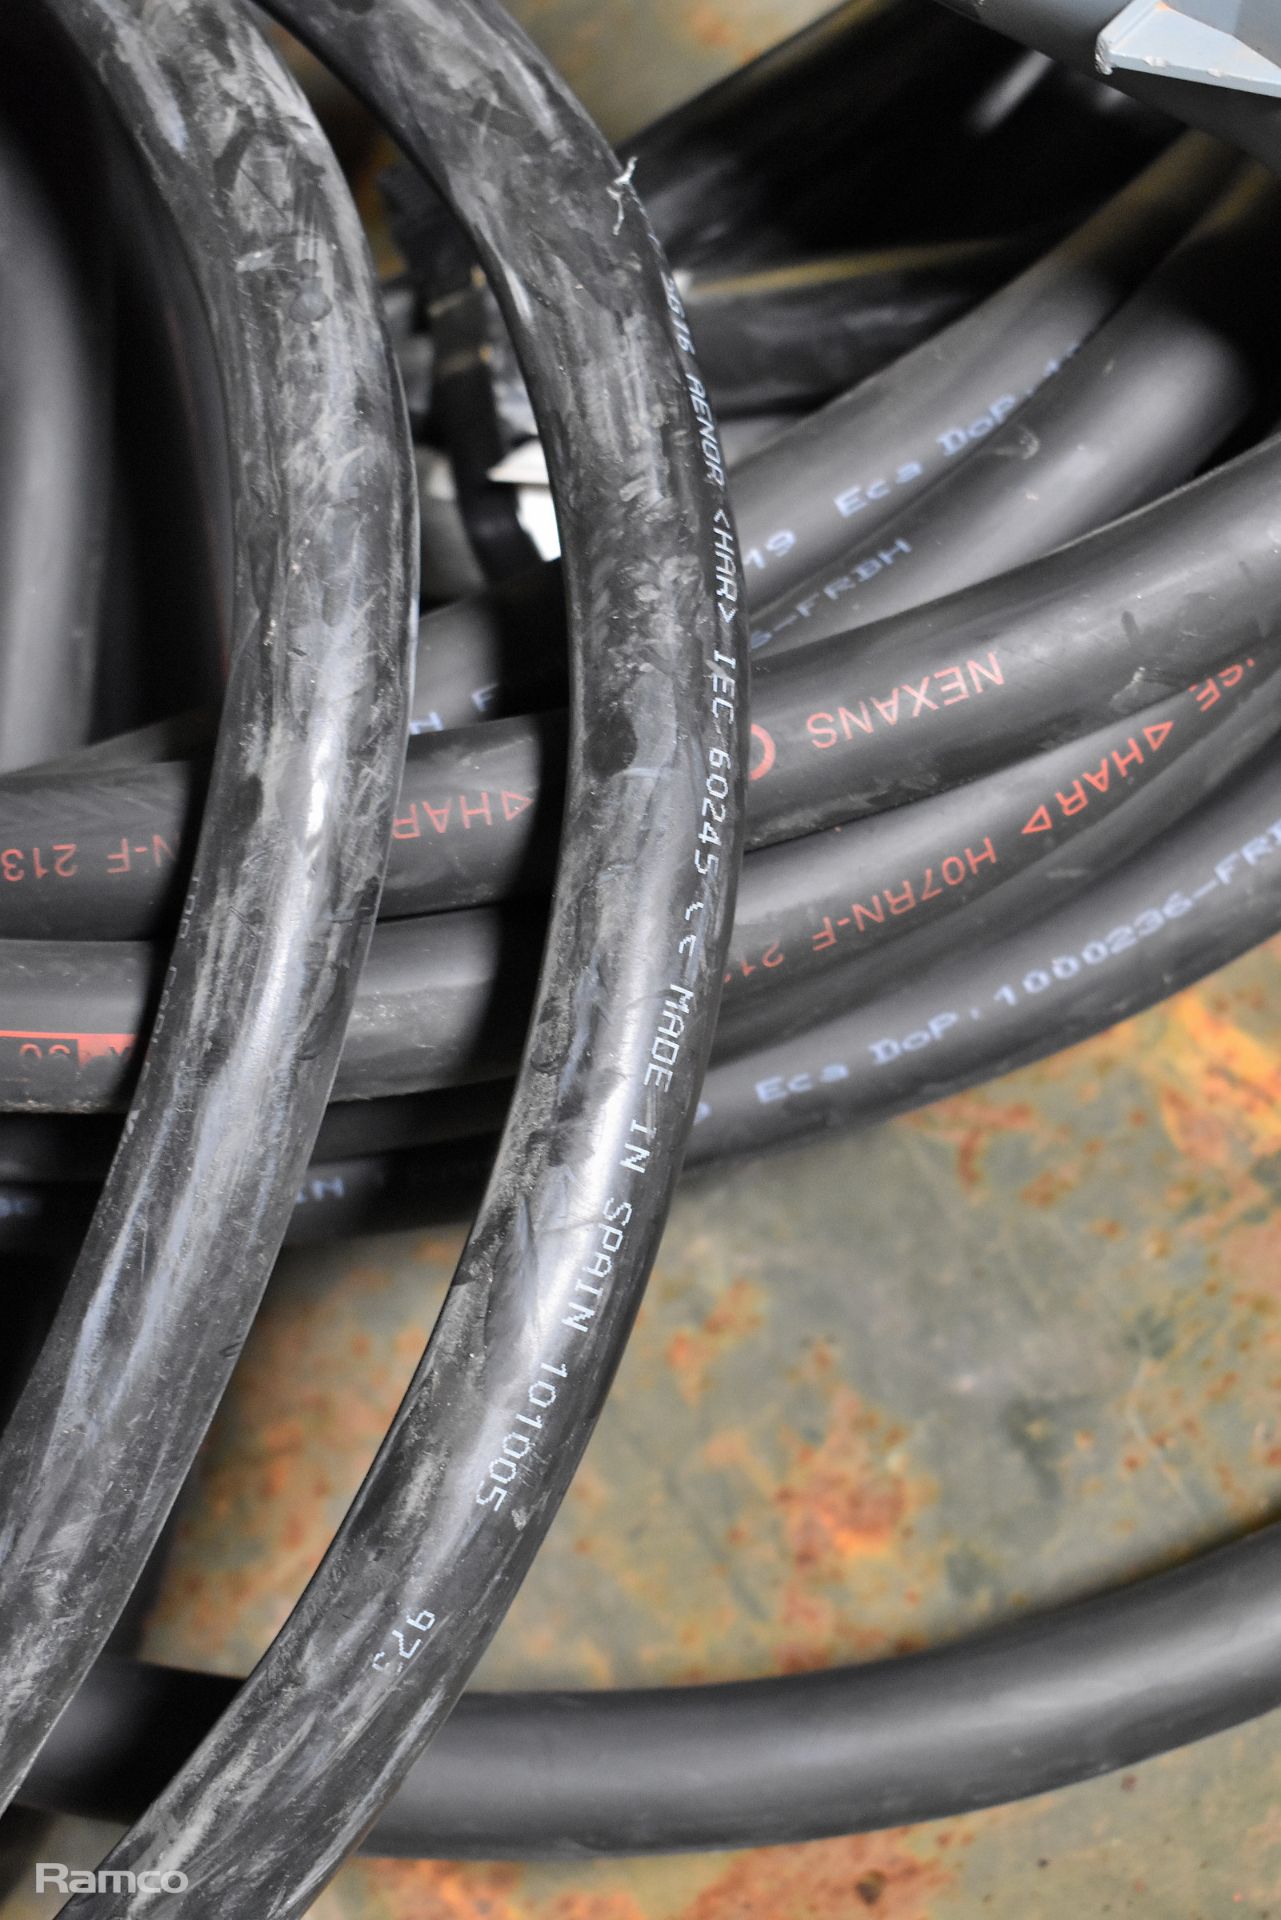 4x Blakley electrics 400v rubber cables with Mennekes connectors - Bild 4 aus 4